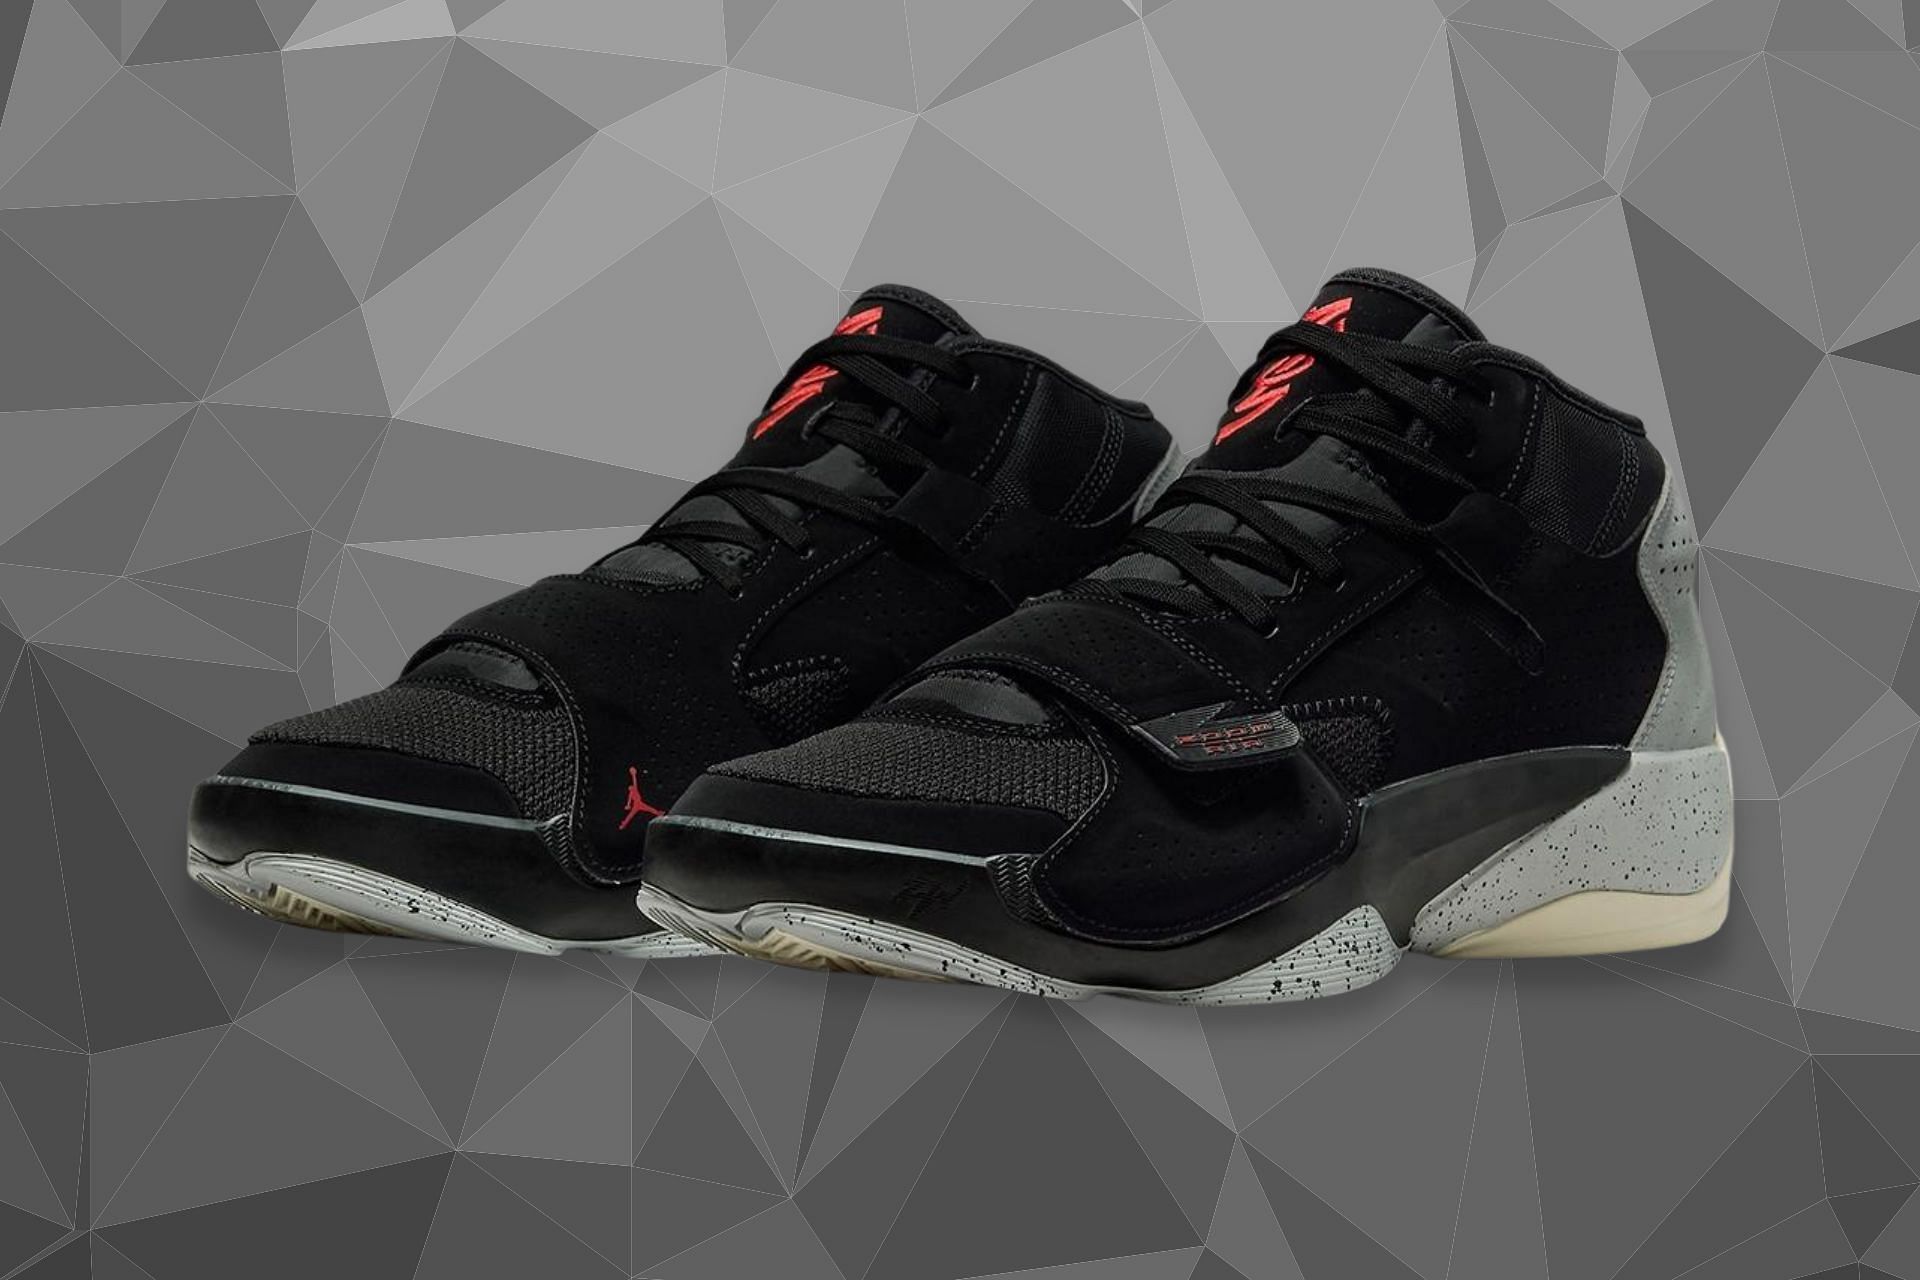 Jordan Zion 2 Black Cement shoes (Image via Nike)